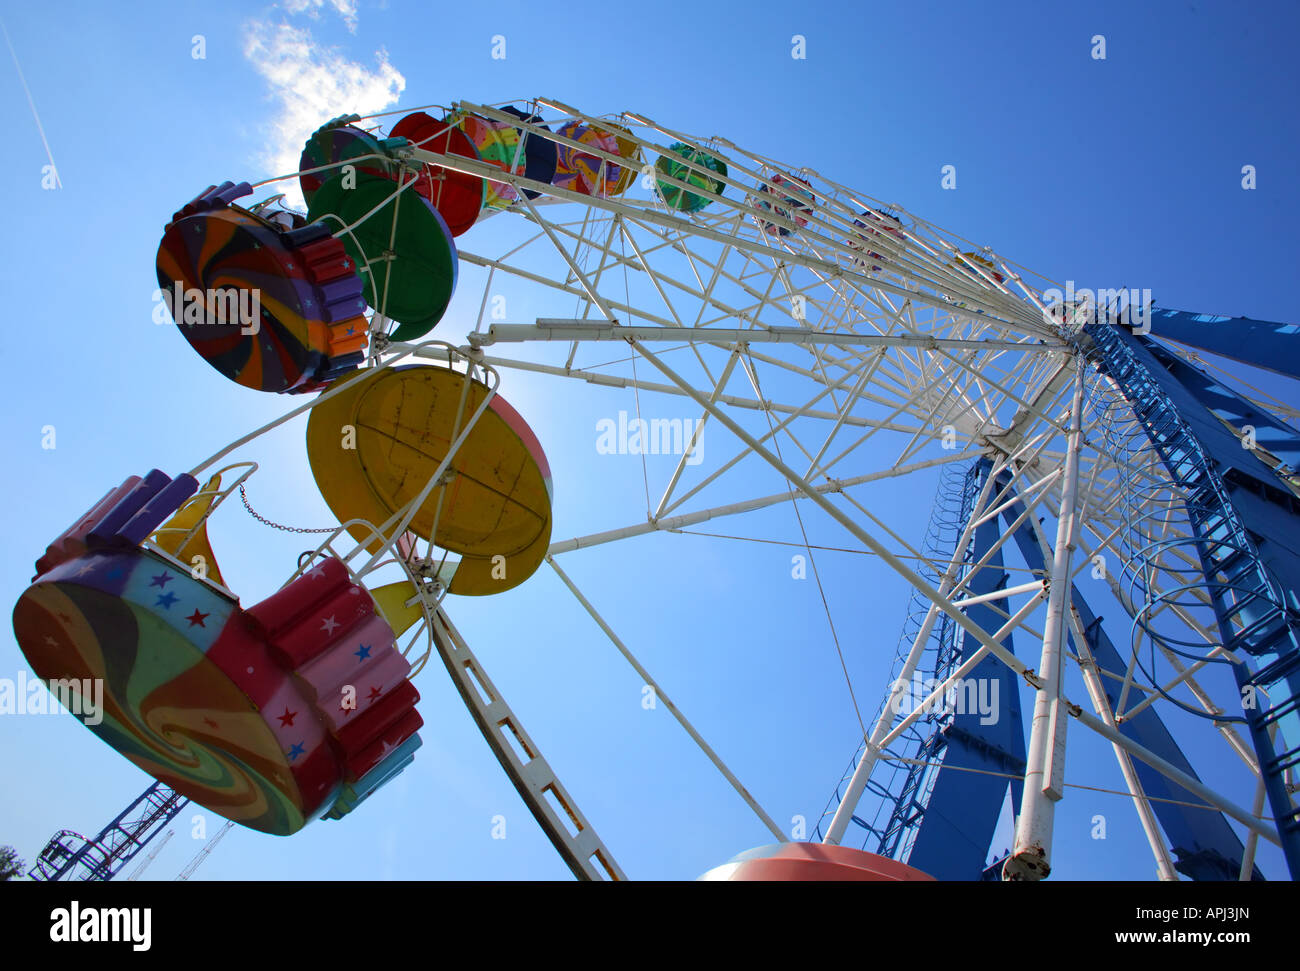 Ferris wheel at Divo ostrov russia Stock Photo